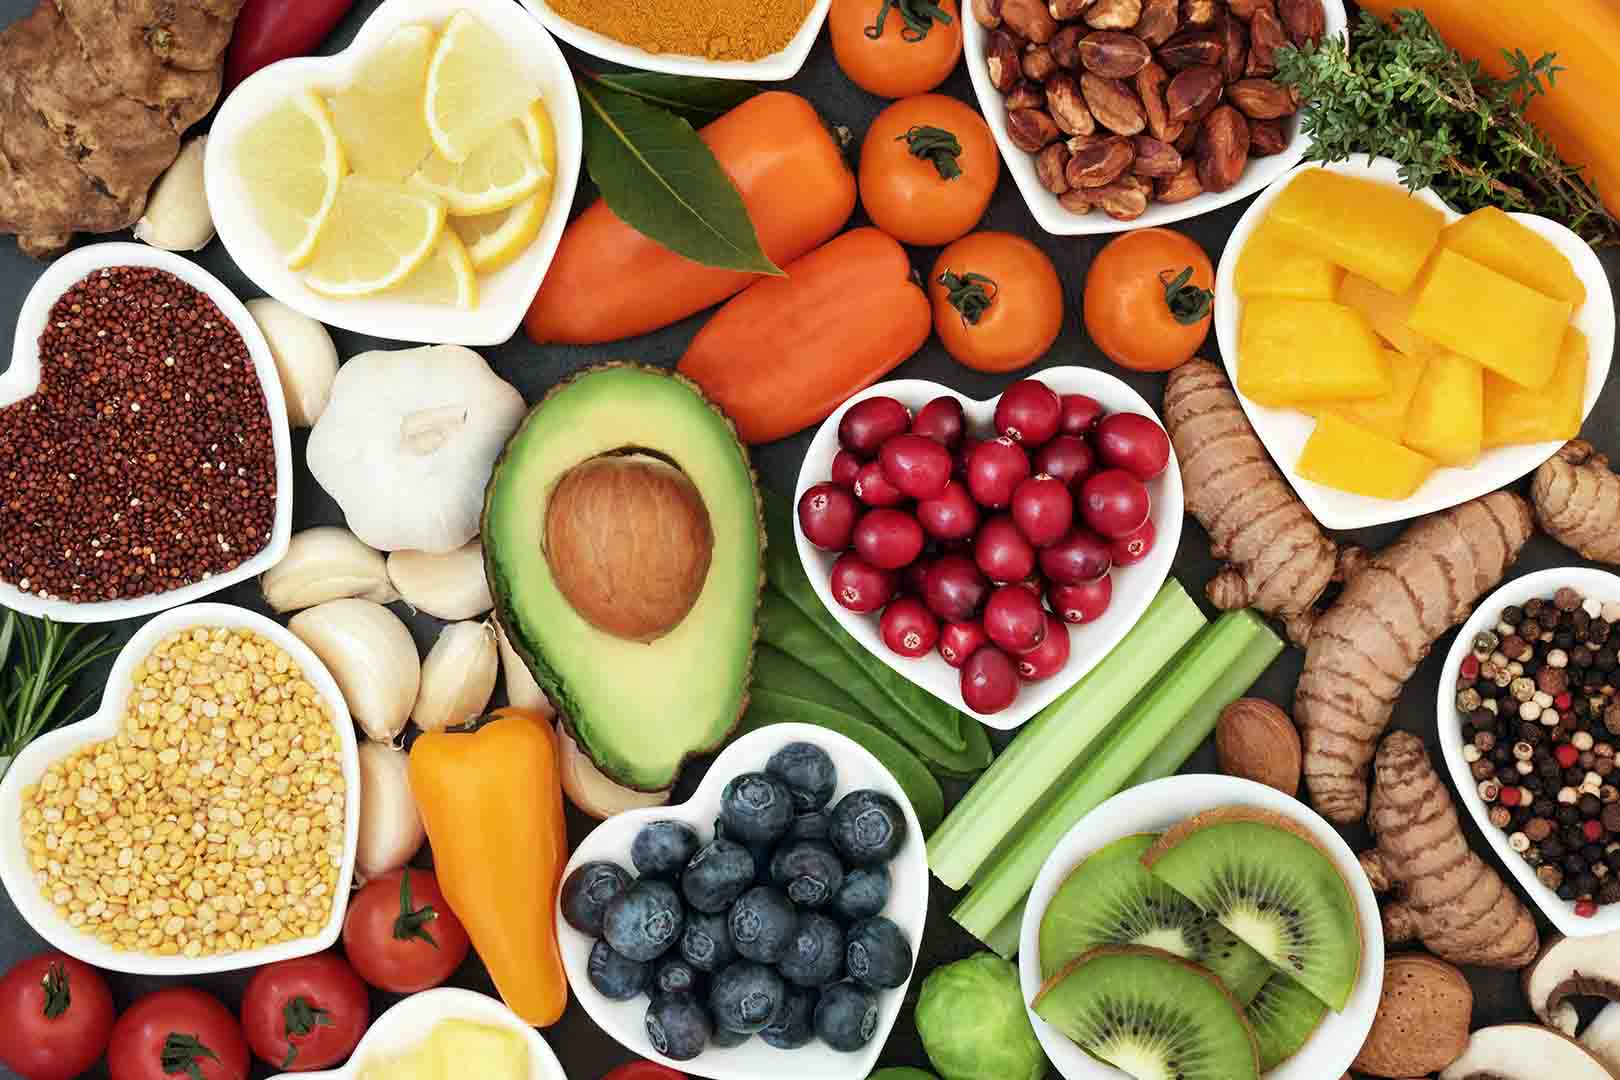 Lemak yang mineral, protein, adalah karbohidrat, dan mengandung vitamin contoh makanan Contoh Makanan